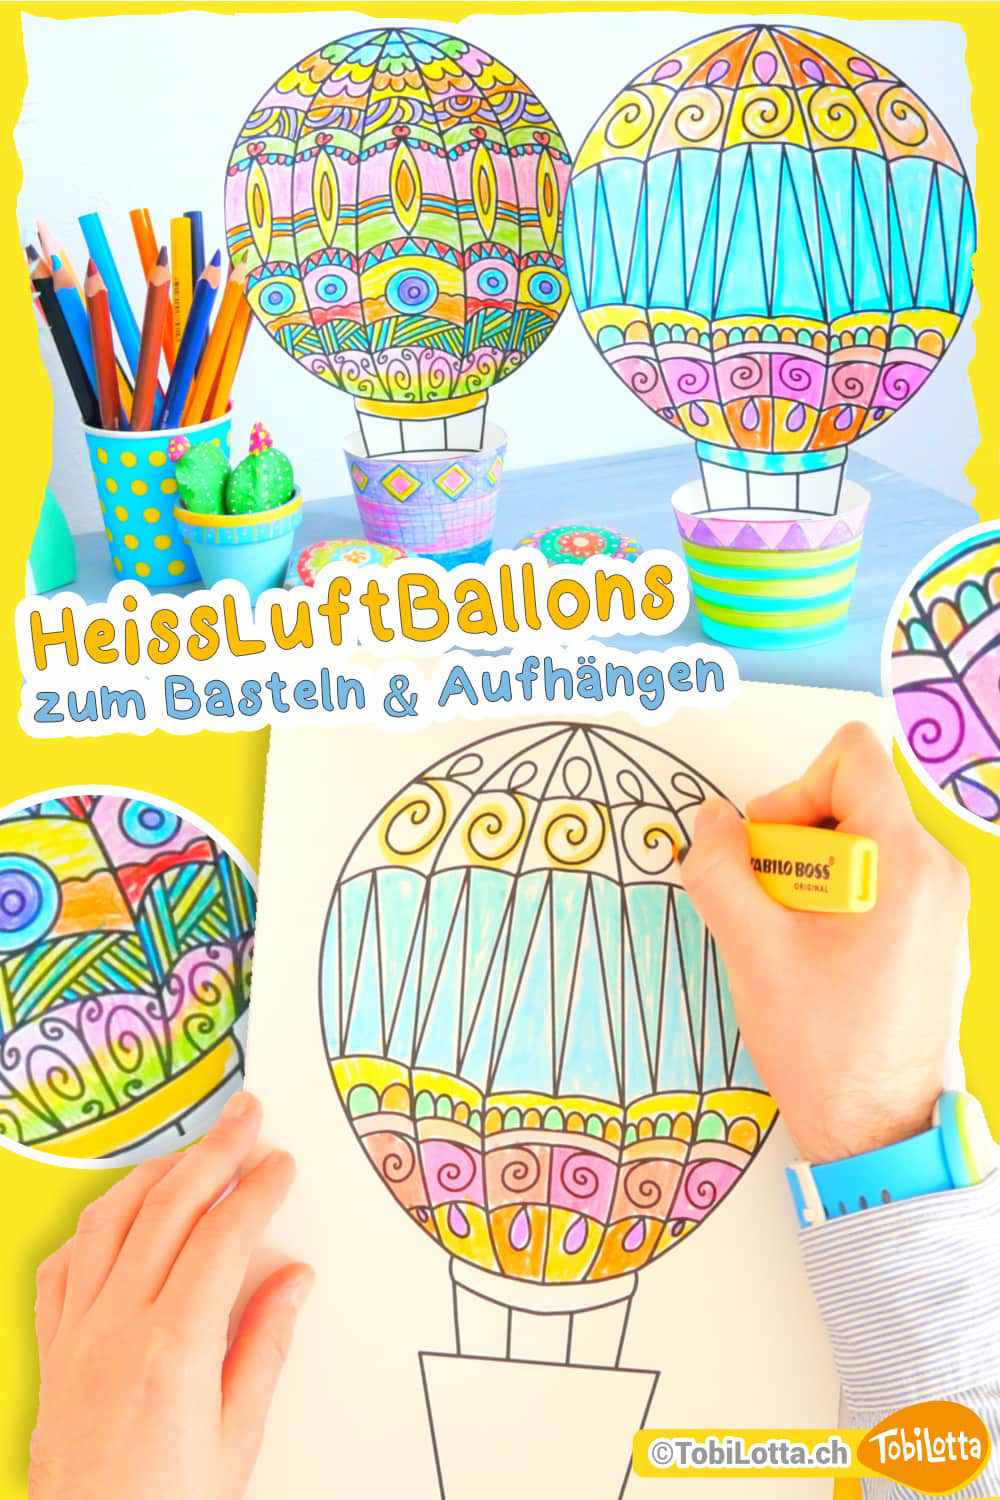 Heissluftballons-Bastelvorlage-Fensterbilder-Basteln-mit-Kindern bastelvorlage heissluftballons aufhängen kinderzimmer bastelvorlagen kaufen shop download gratis ballons